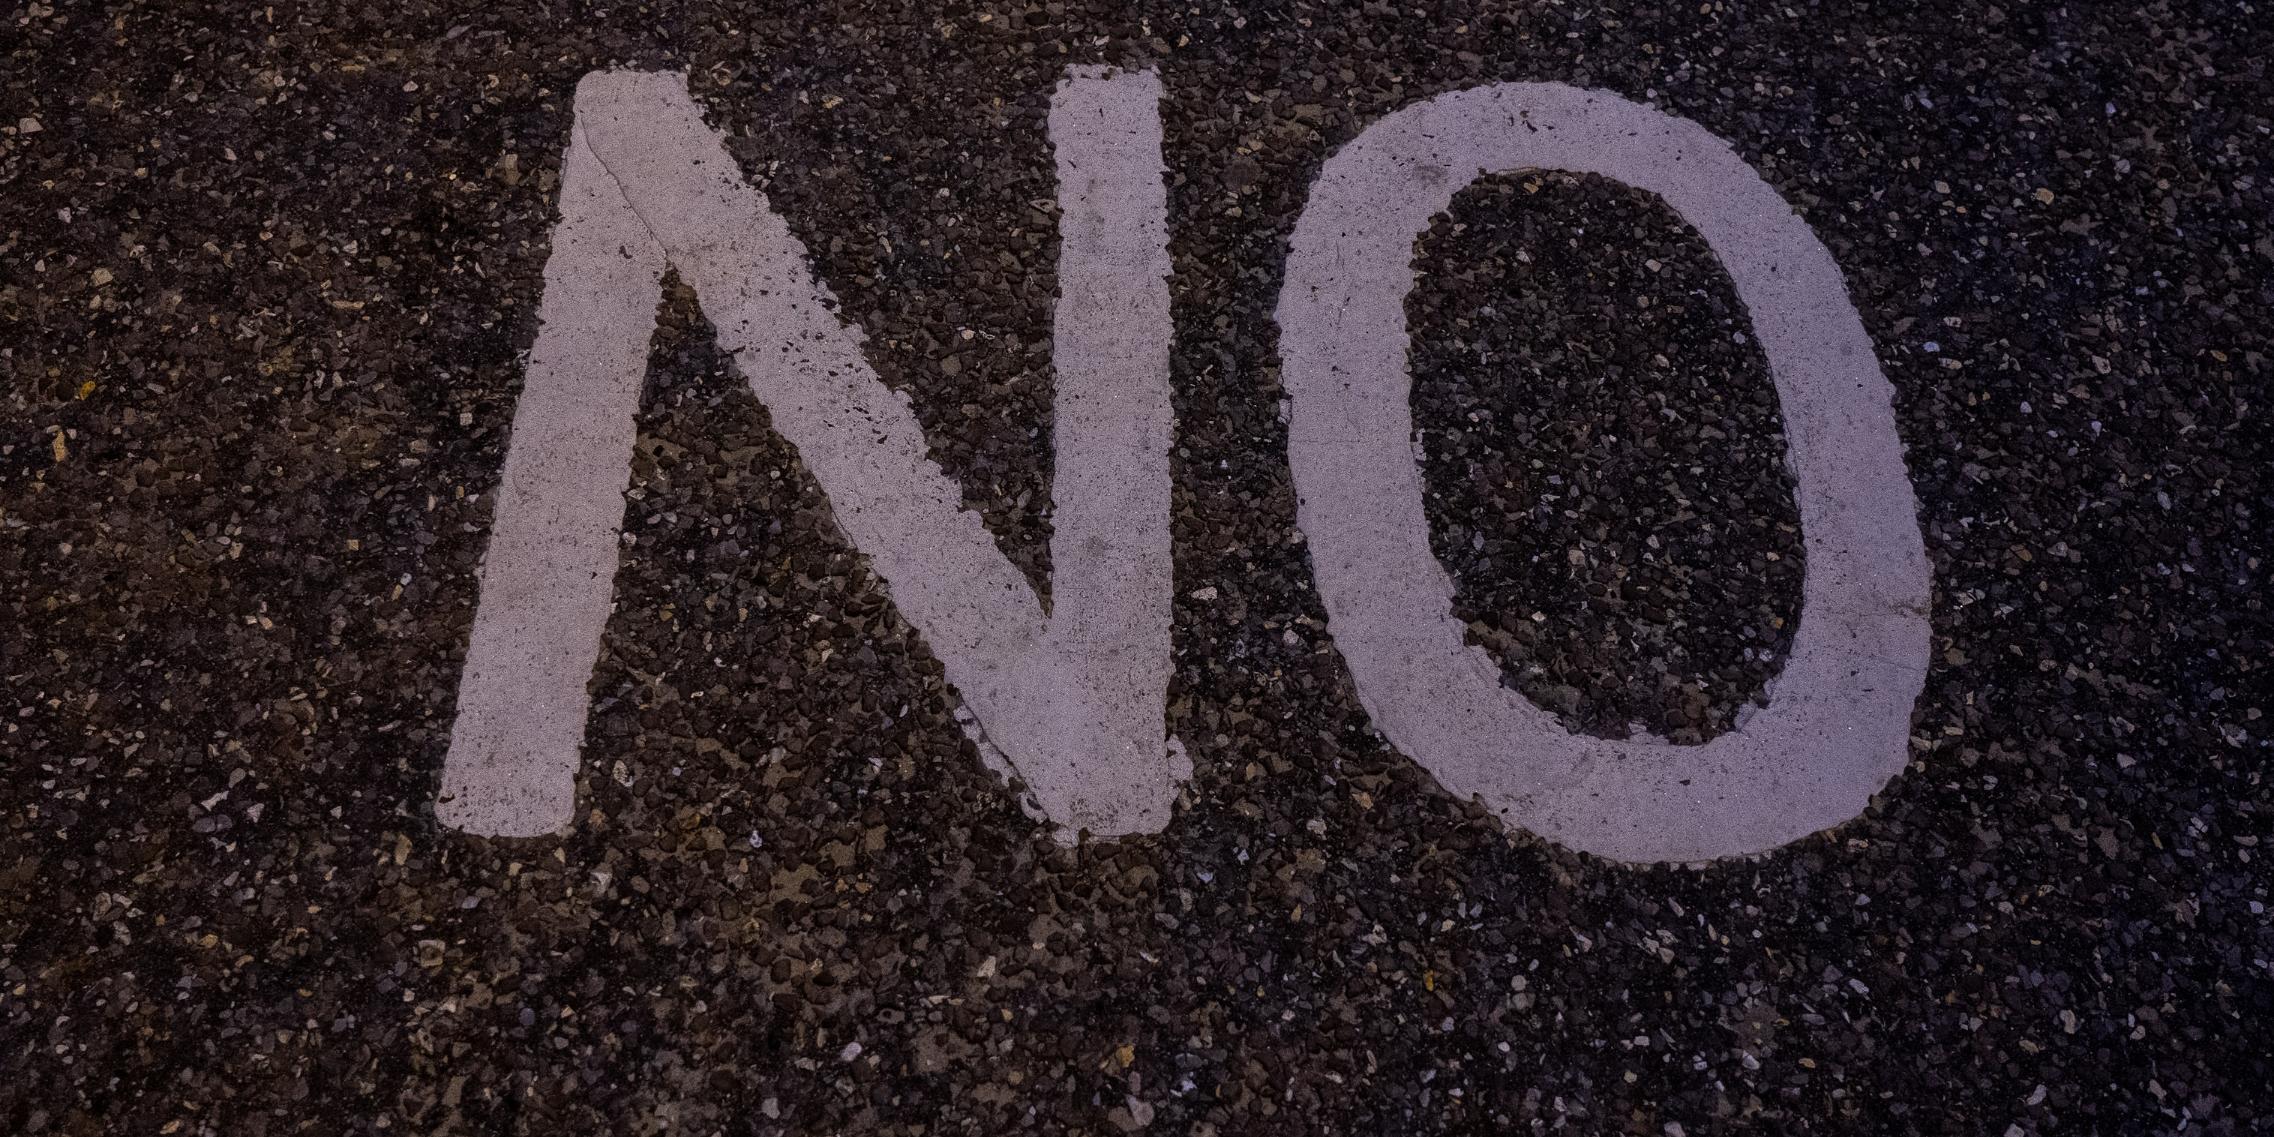 Auf einer Straße ist No, das englische Wort für nein aufgemalt